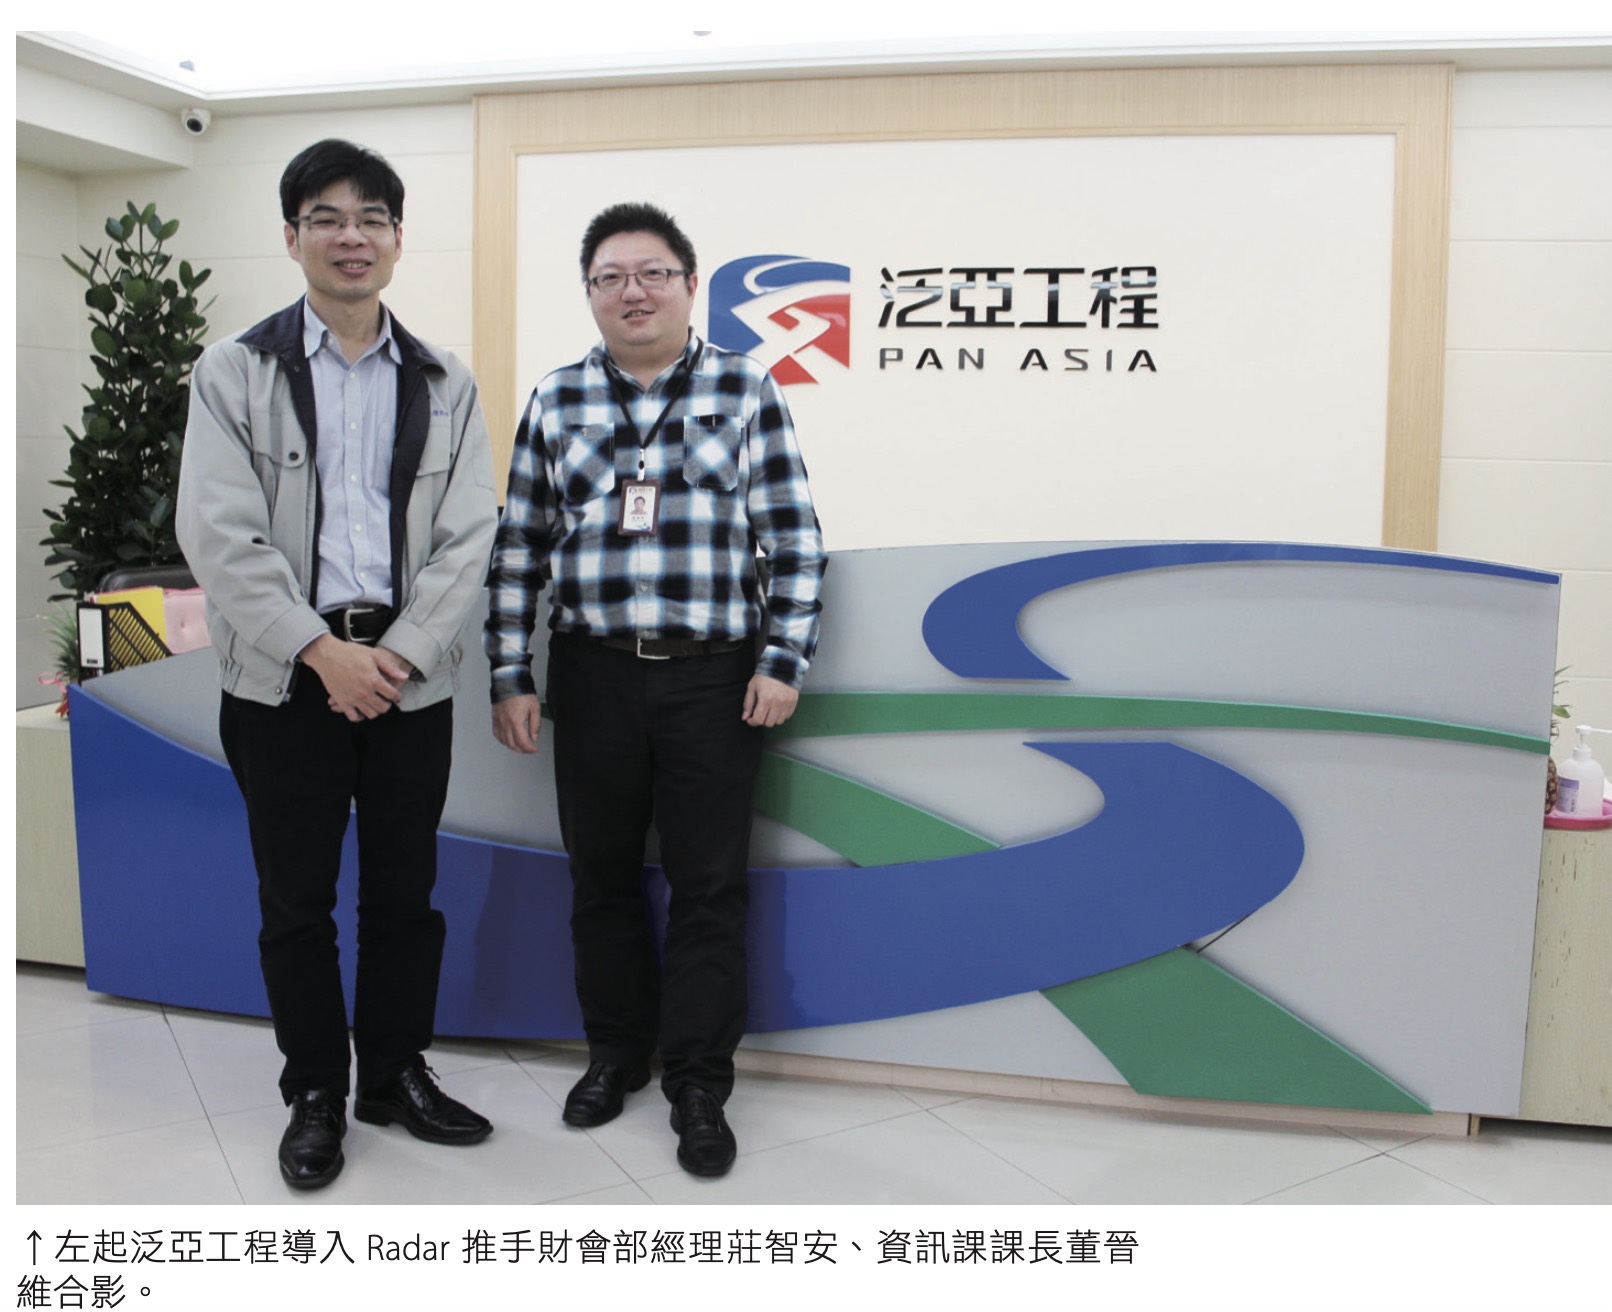 左起泛亞工程導入 Radar 推手財會部經理莊智安、資訊課課長董晉維合影